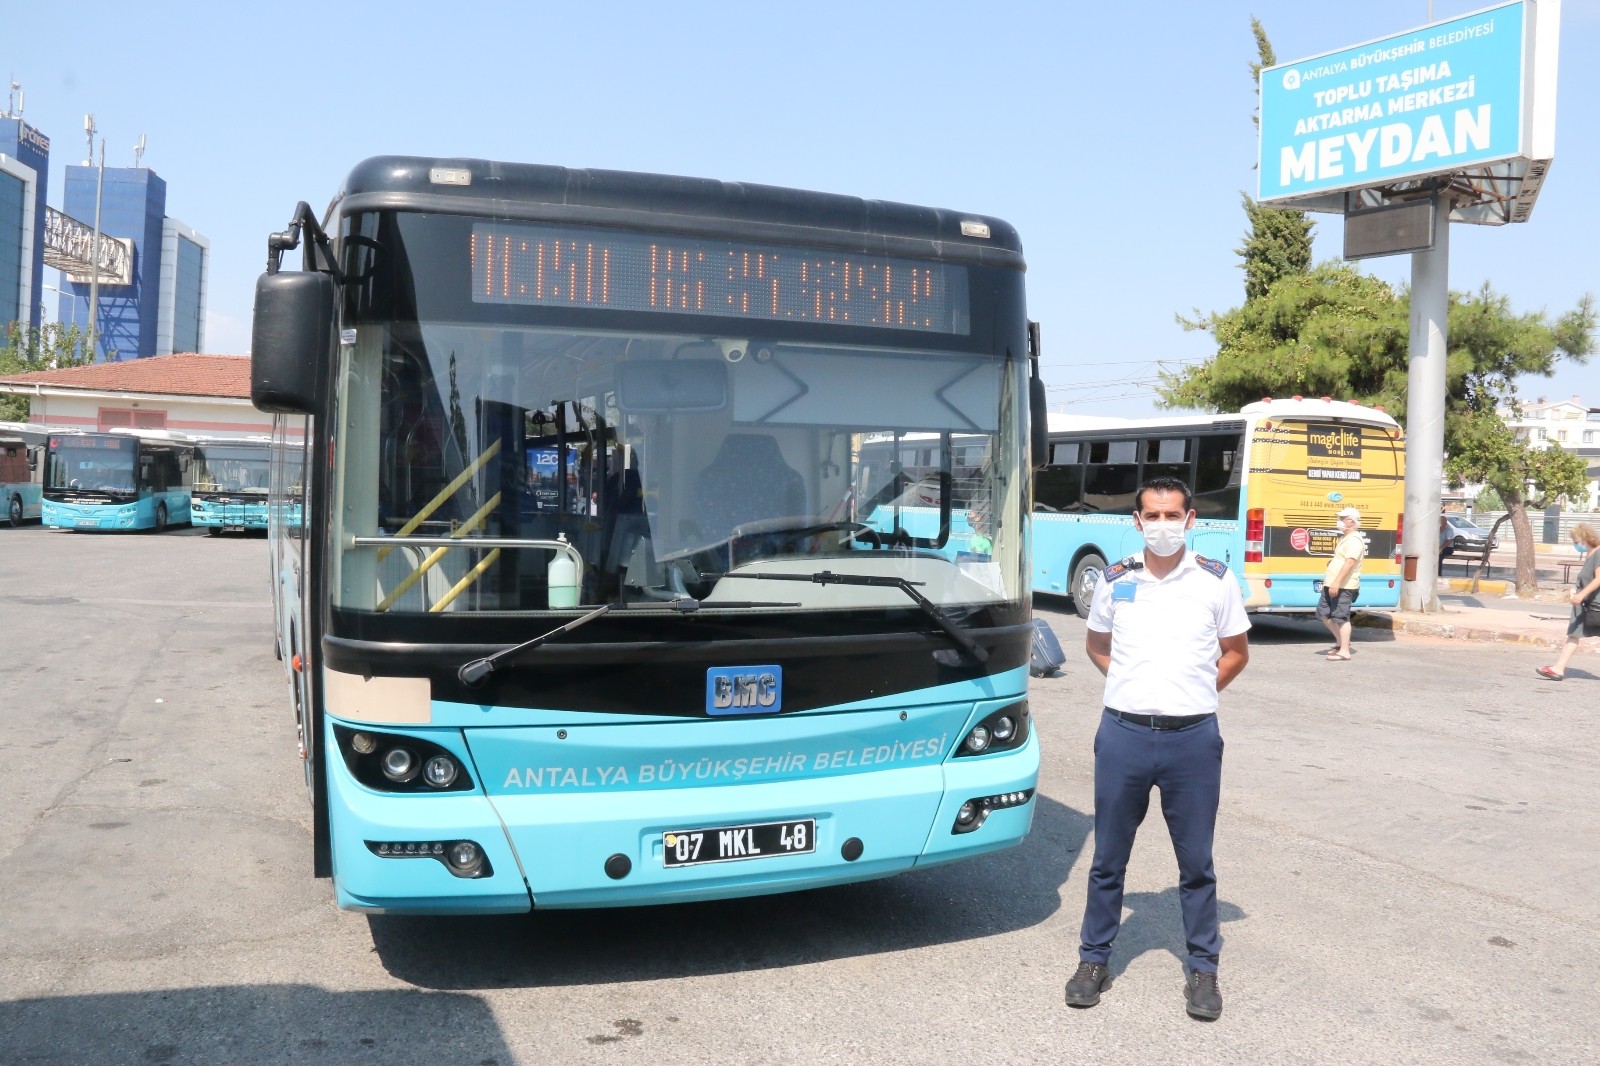 Antalya’da halk otobüsü içerisinde maske takmayı reddeden kadın adeta ortalığı birbirine kattı